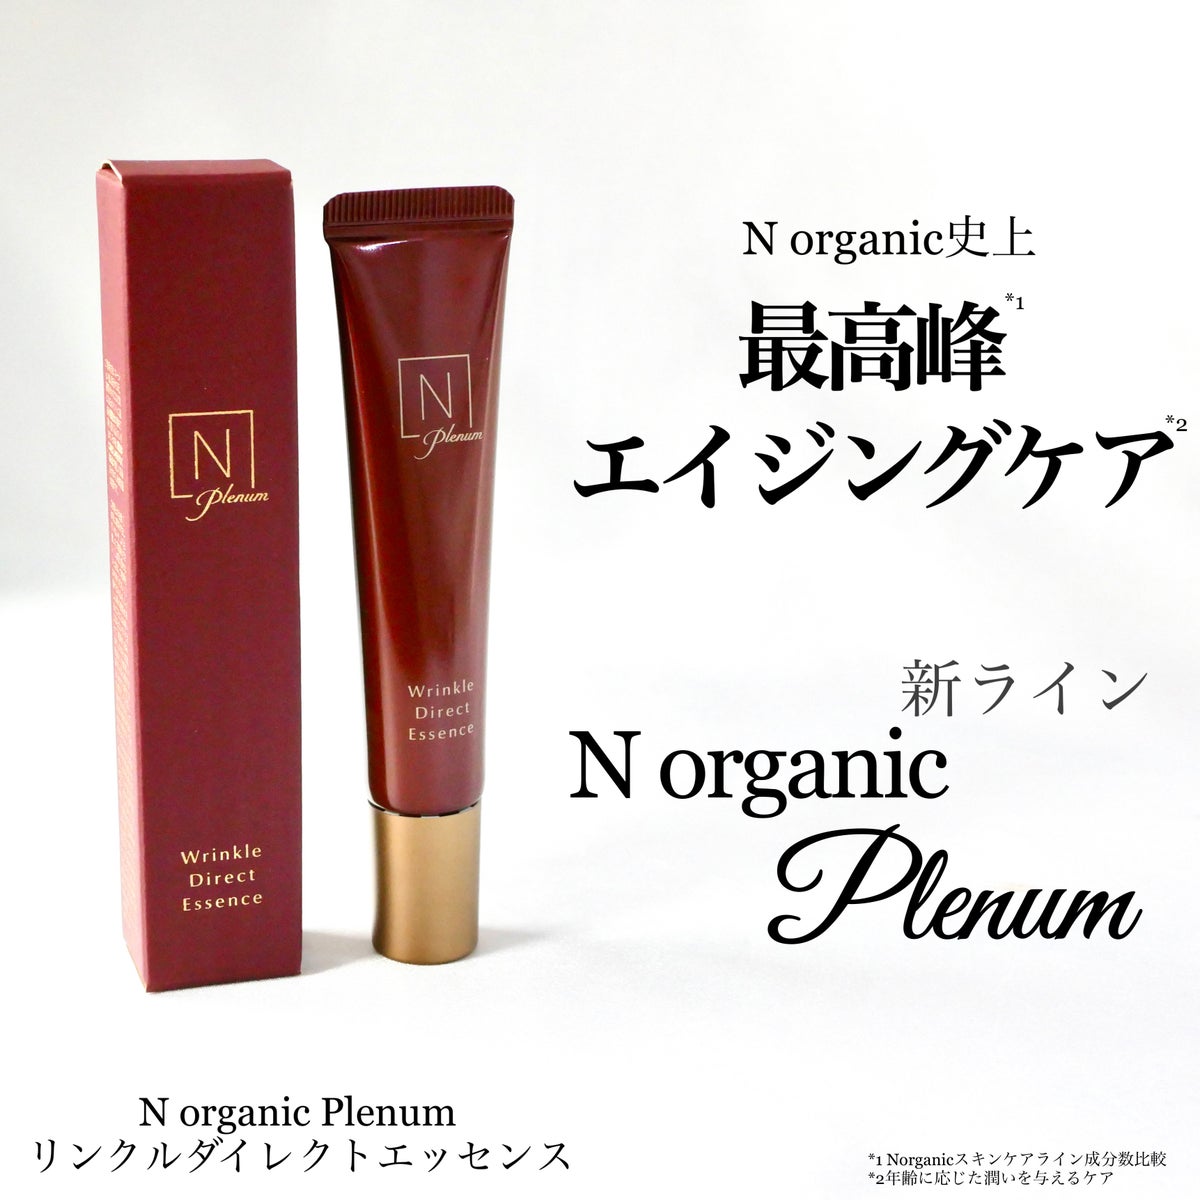 N Organic Plenum リンクルダイレクトエッセンス - アイケア